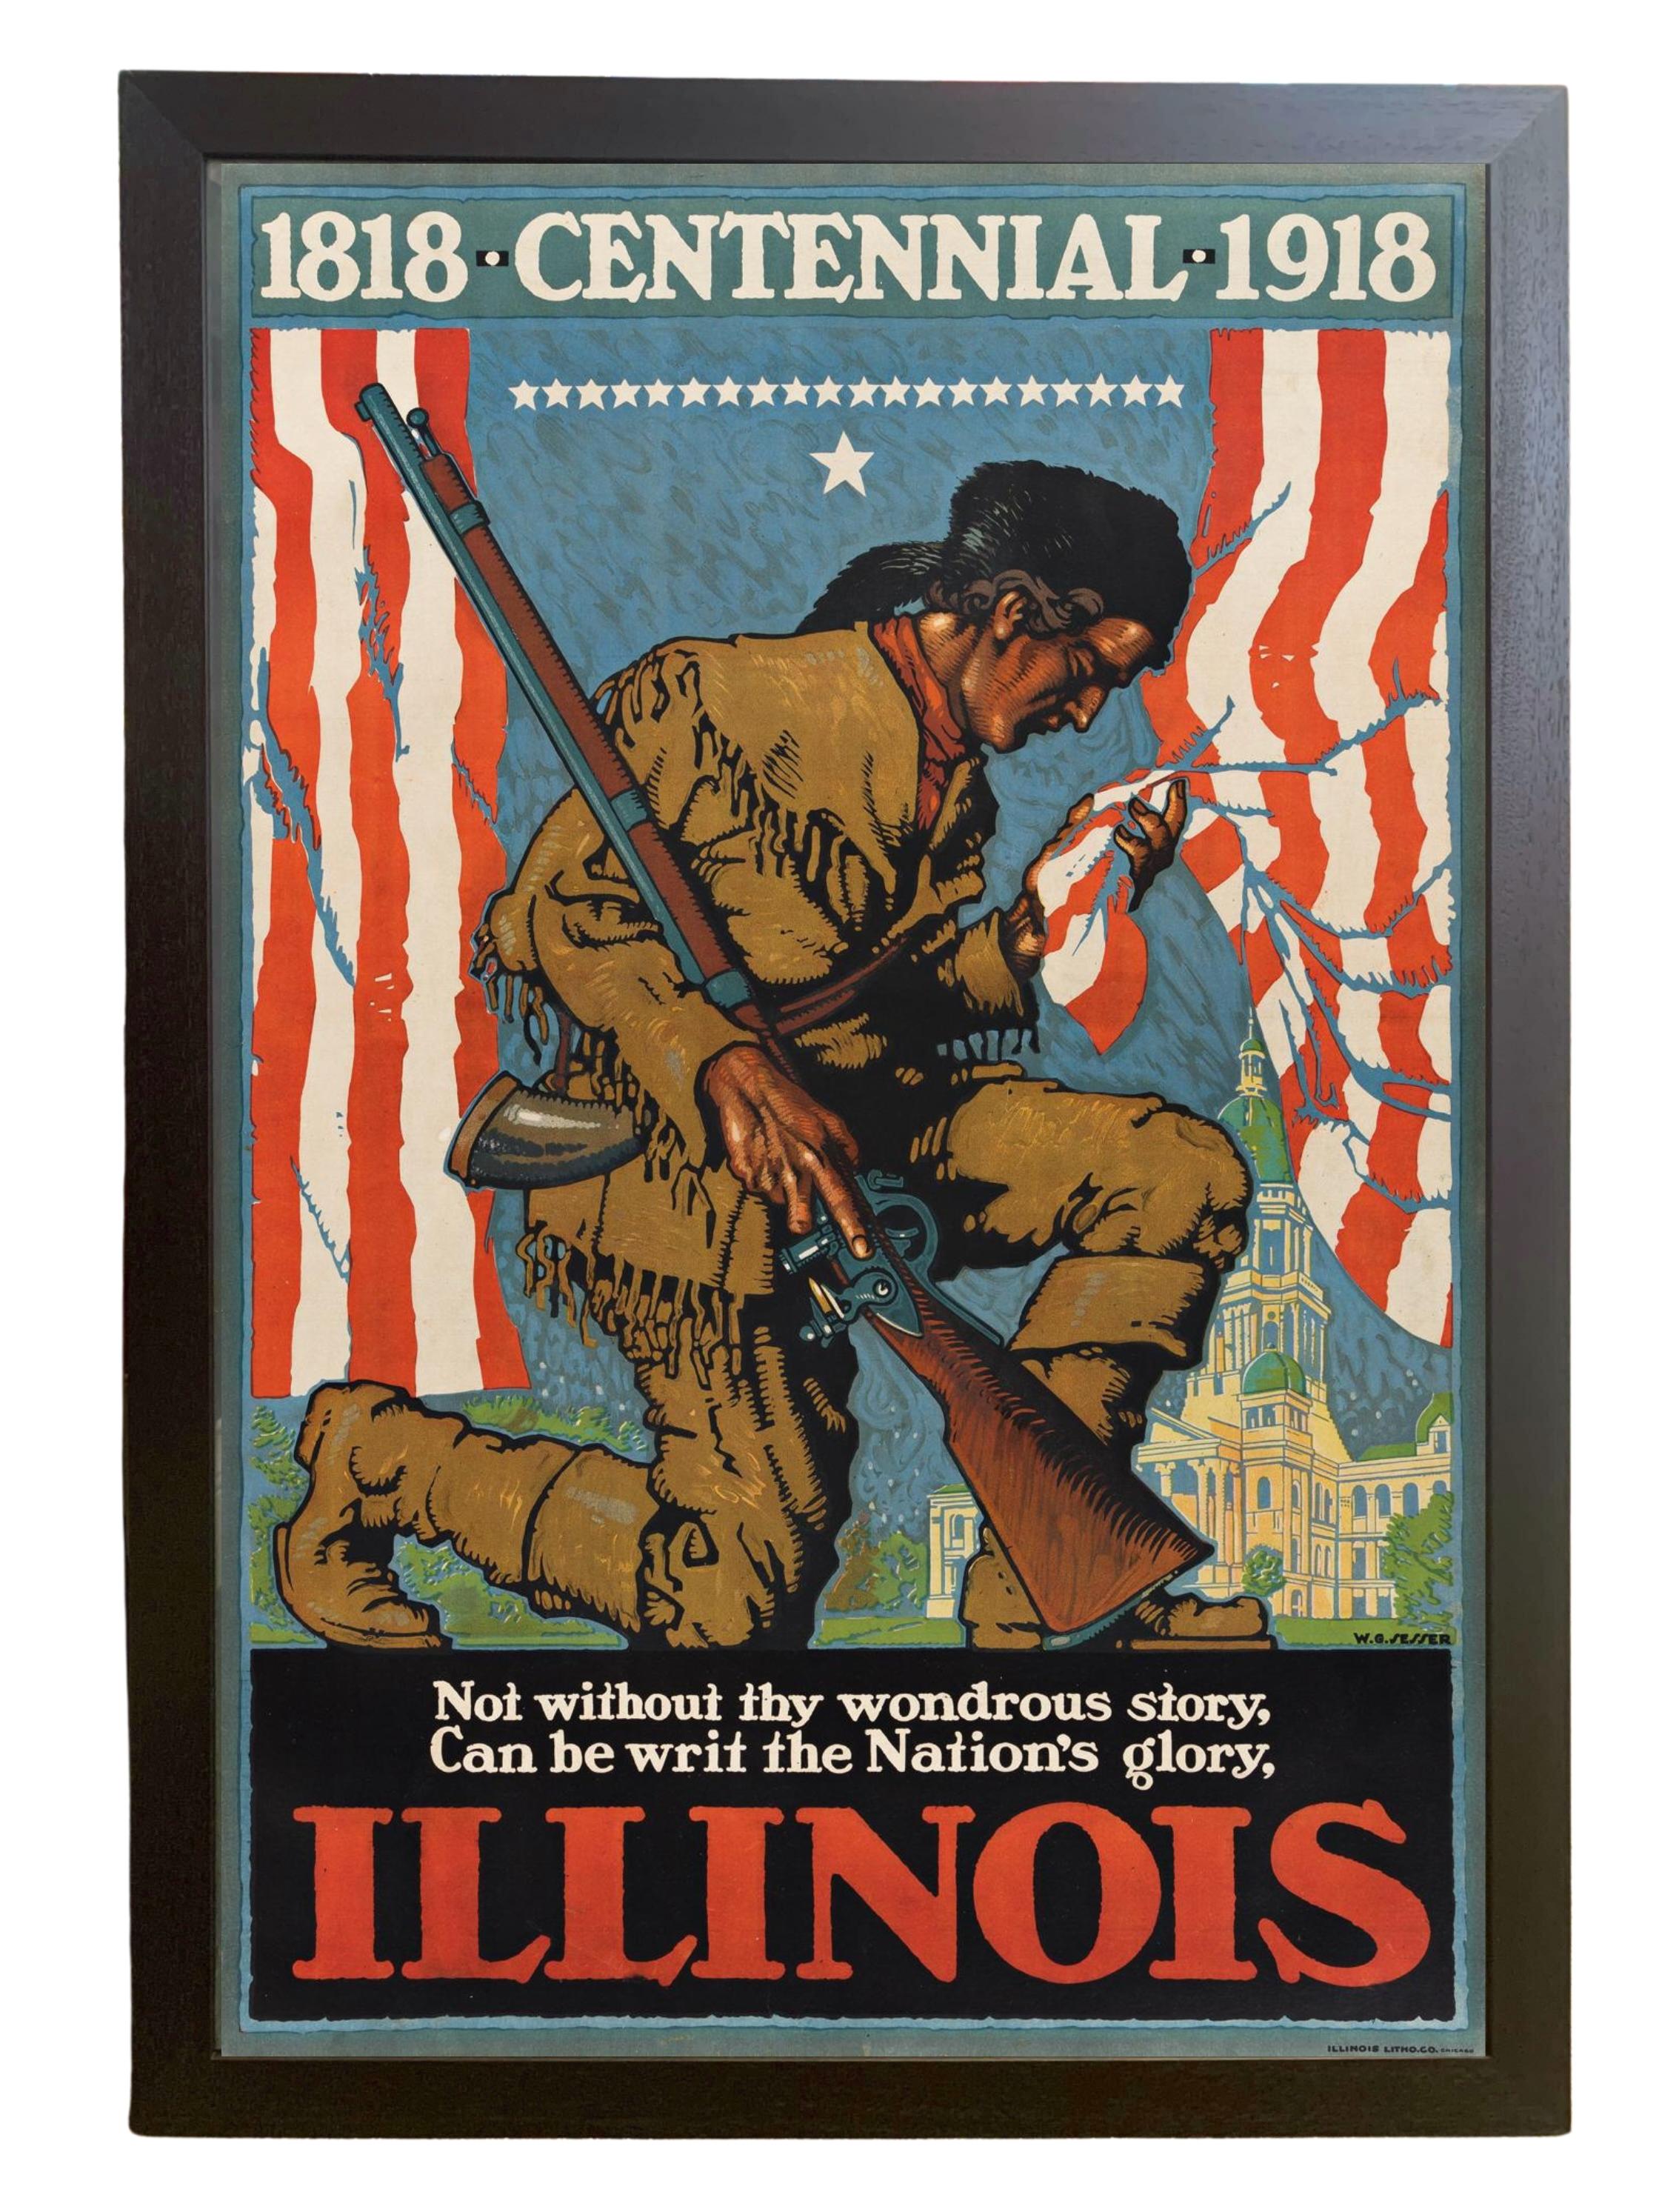 Präsentiert wird ein sehr seltenes und sammelwürdiges Plakat zur Hundertjahrfeier von Illinois 1918 von Willy Sesser. Das Poster wird hier angeboten  in seiner größten Ausgabegröße, vollfarbig gedruckt. Das Plakat wurde von Illinois Litho gedruckt.